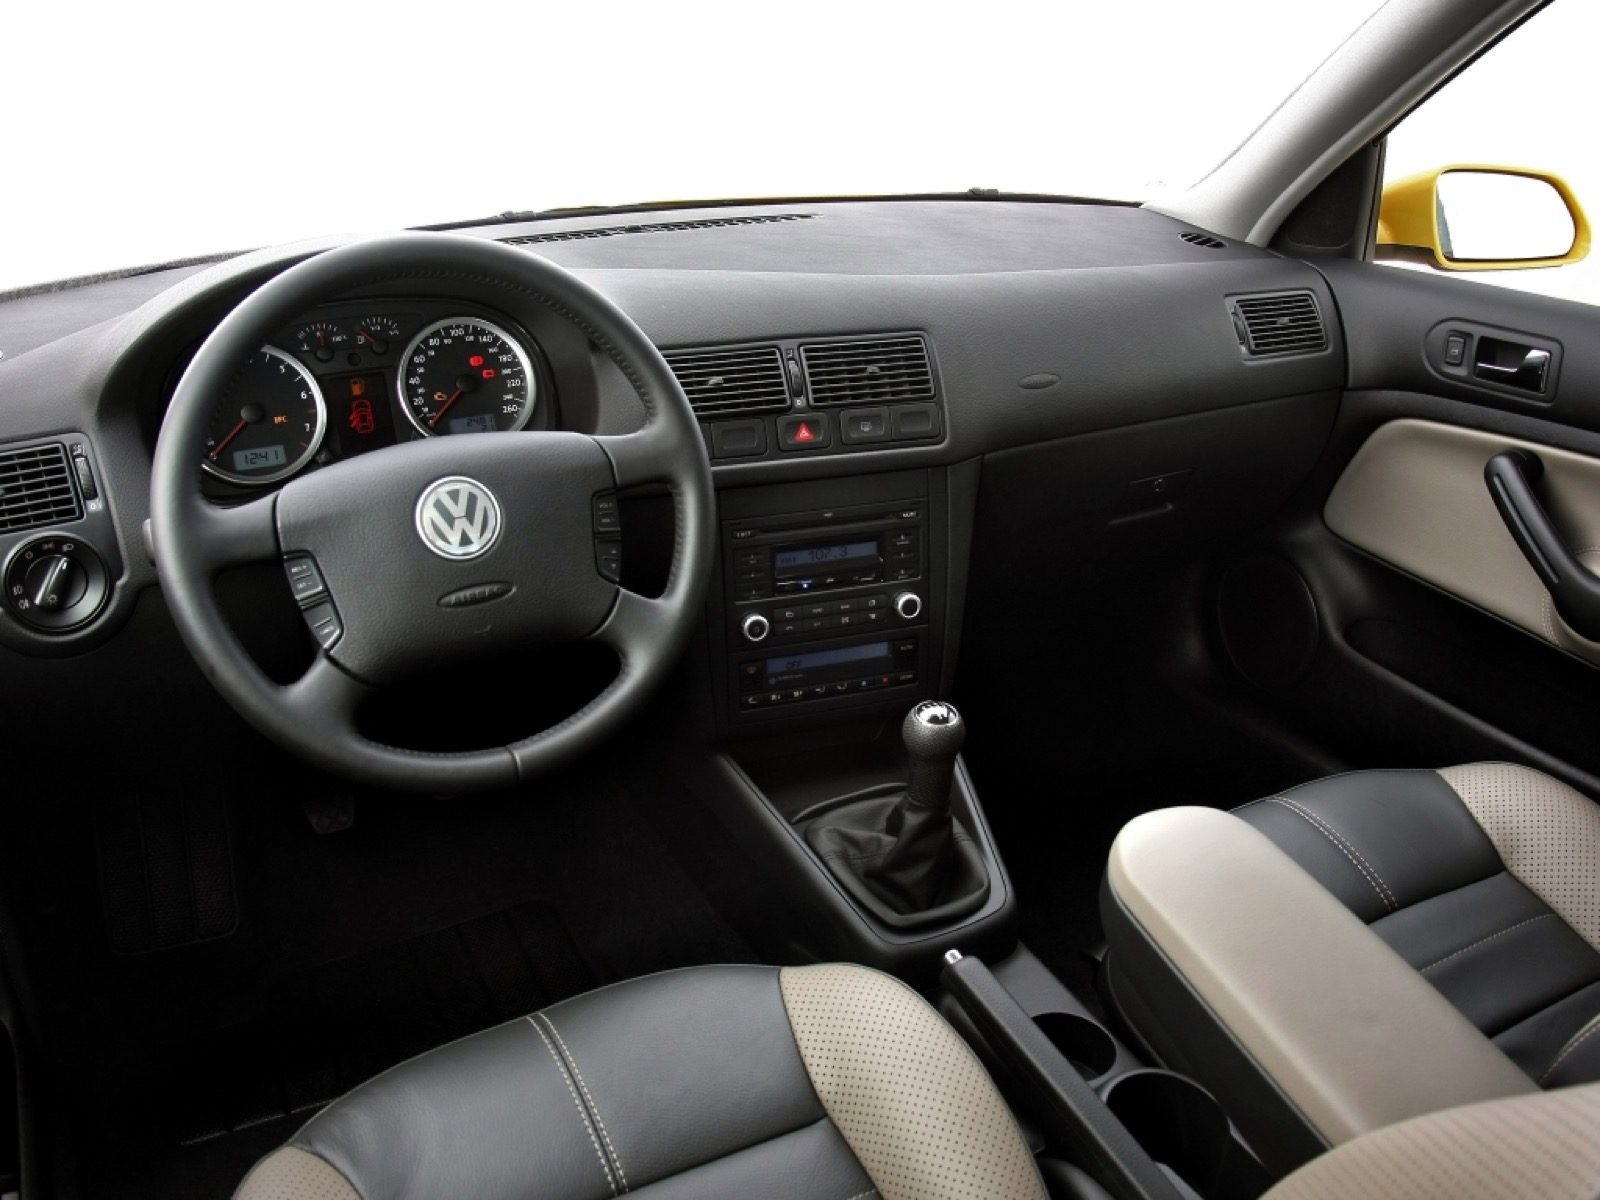 Brood Mondwater historisch 10 redenen waarom de Volkswagen Golf 4 briljant is - Autoblog.nl